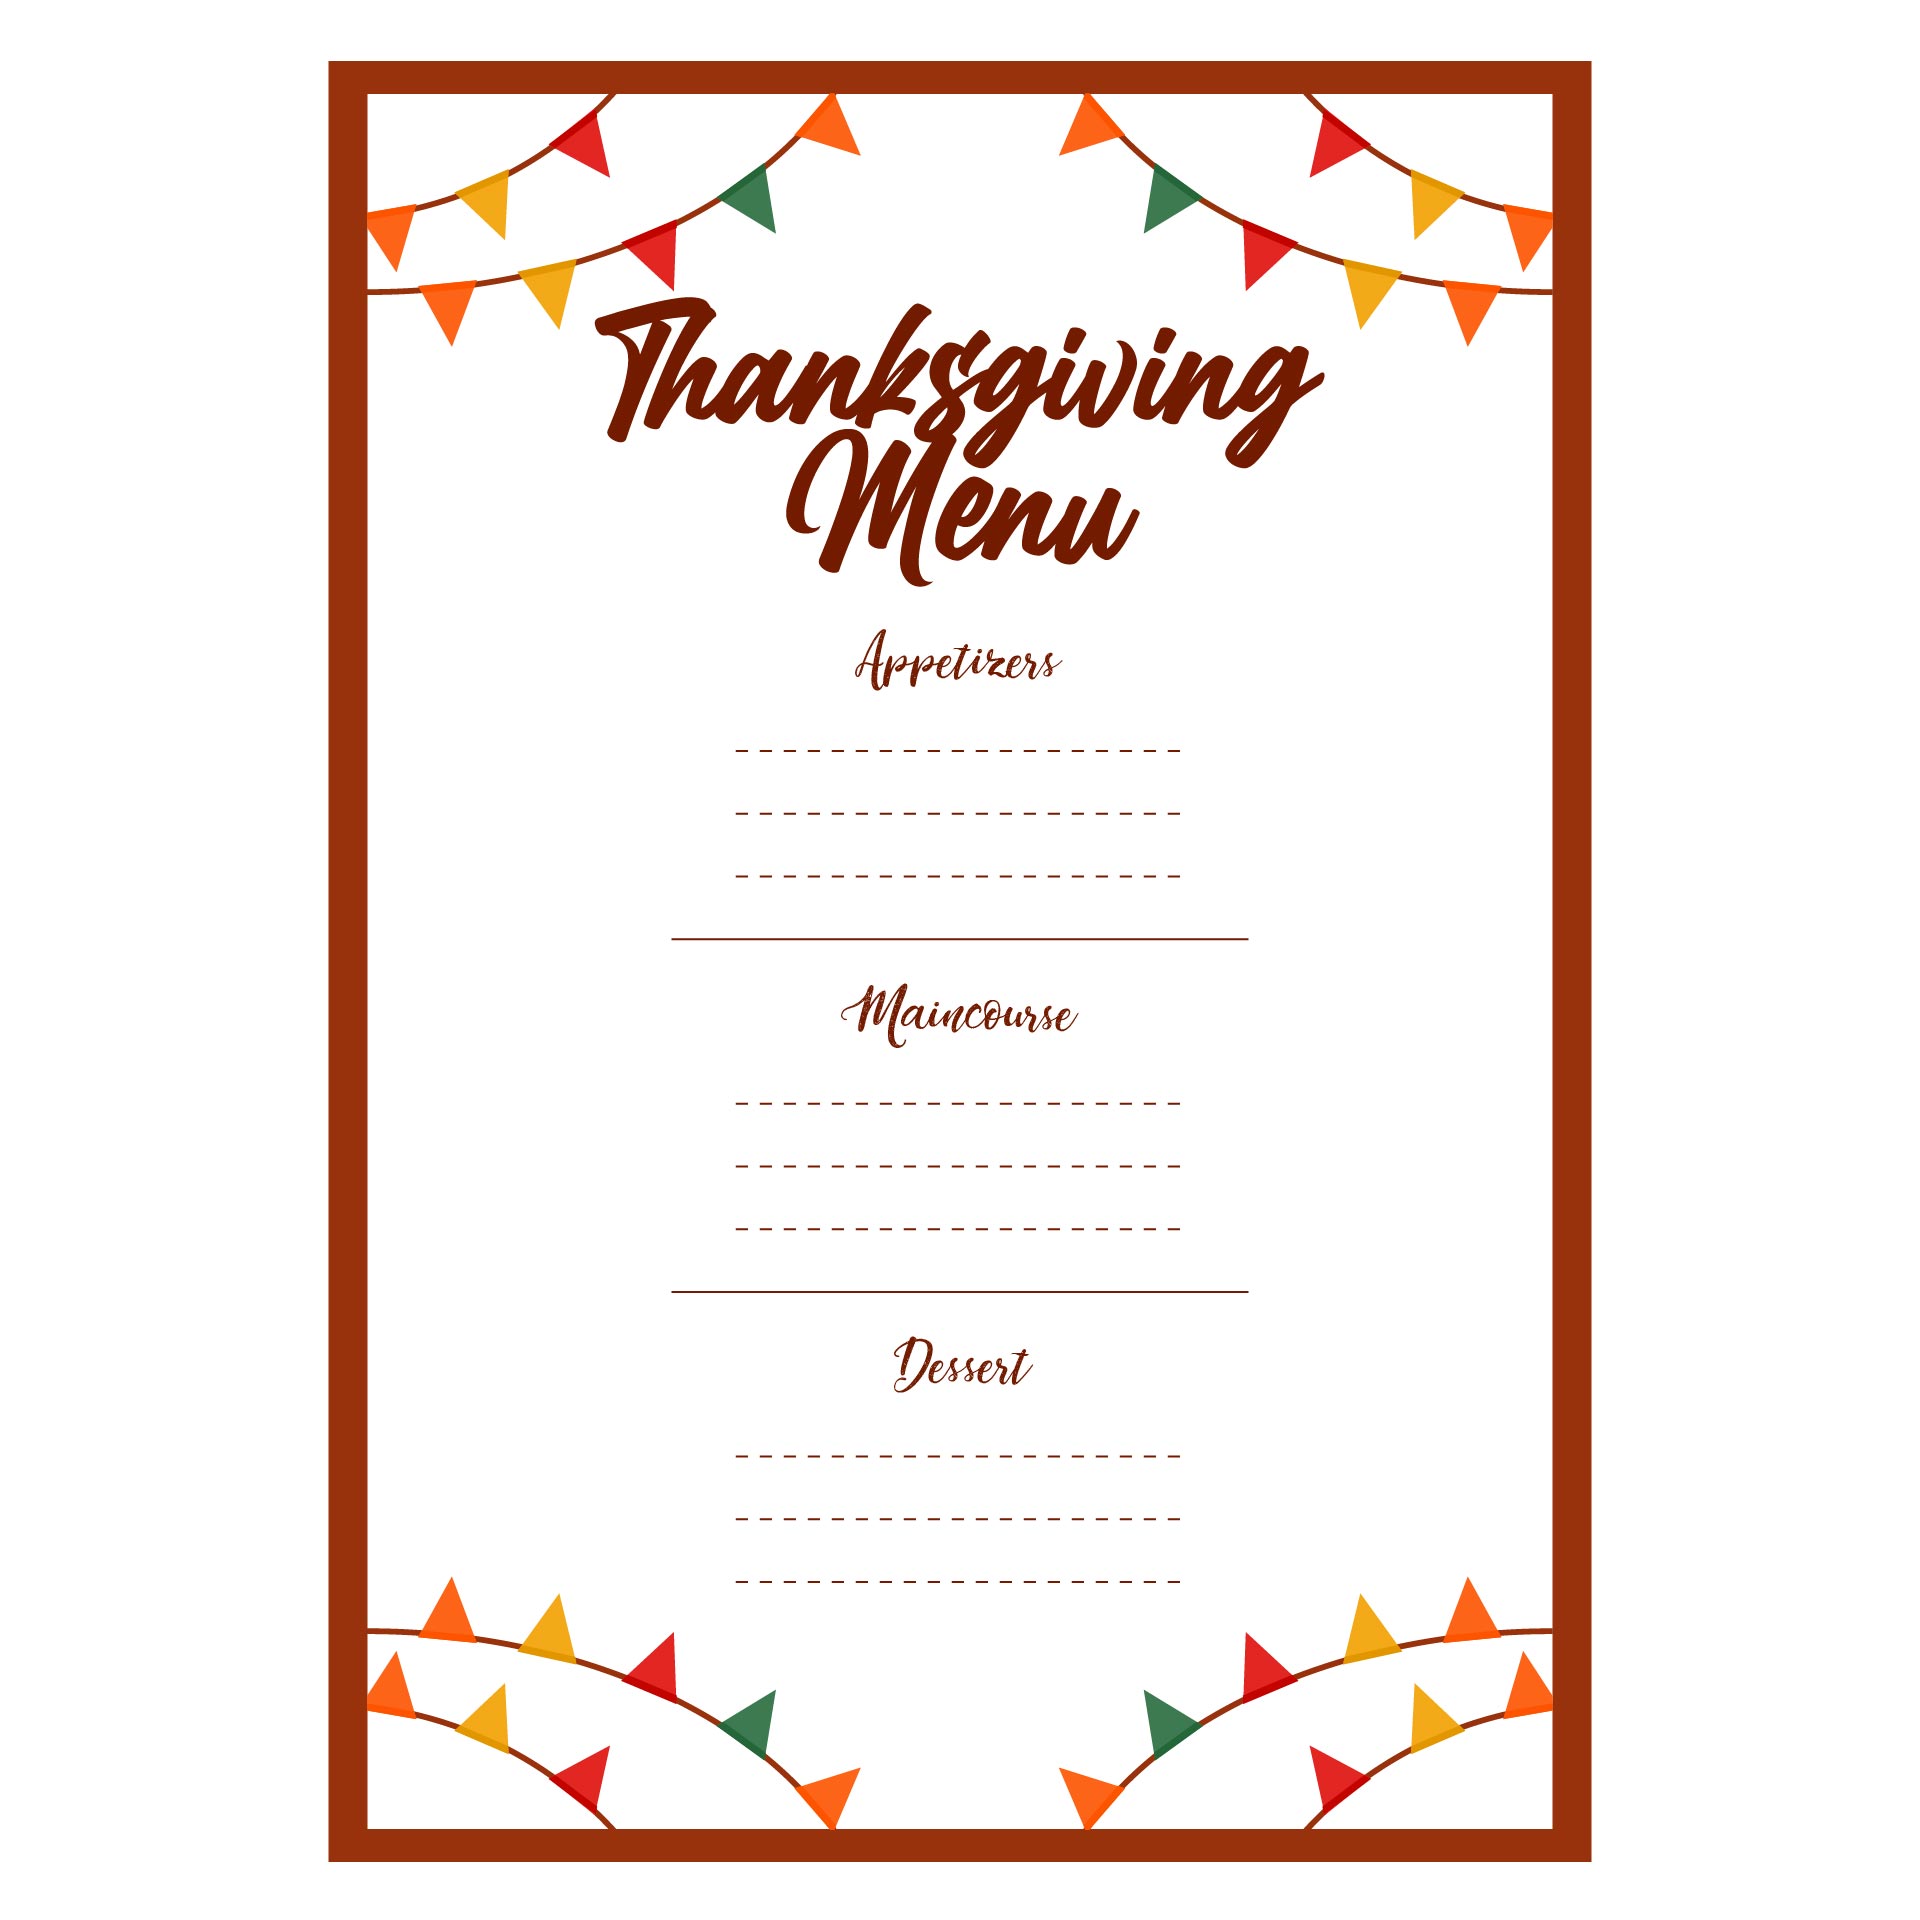 Blank Printable Thanksgiving Menu Template - Printable World Holiday